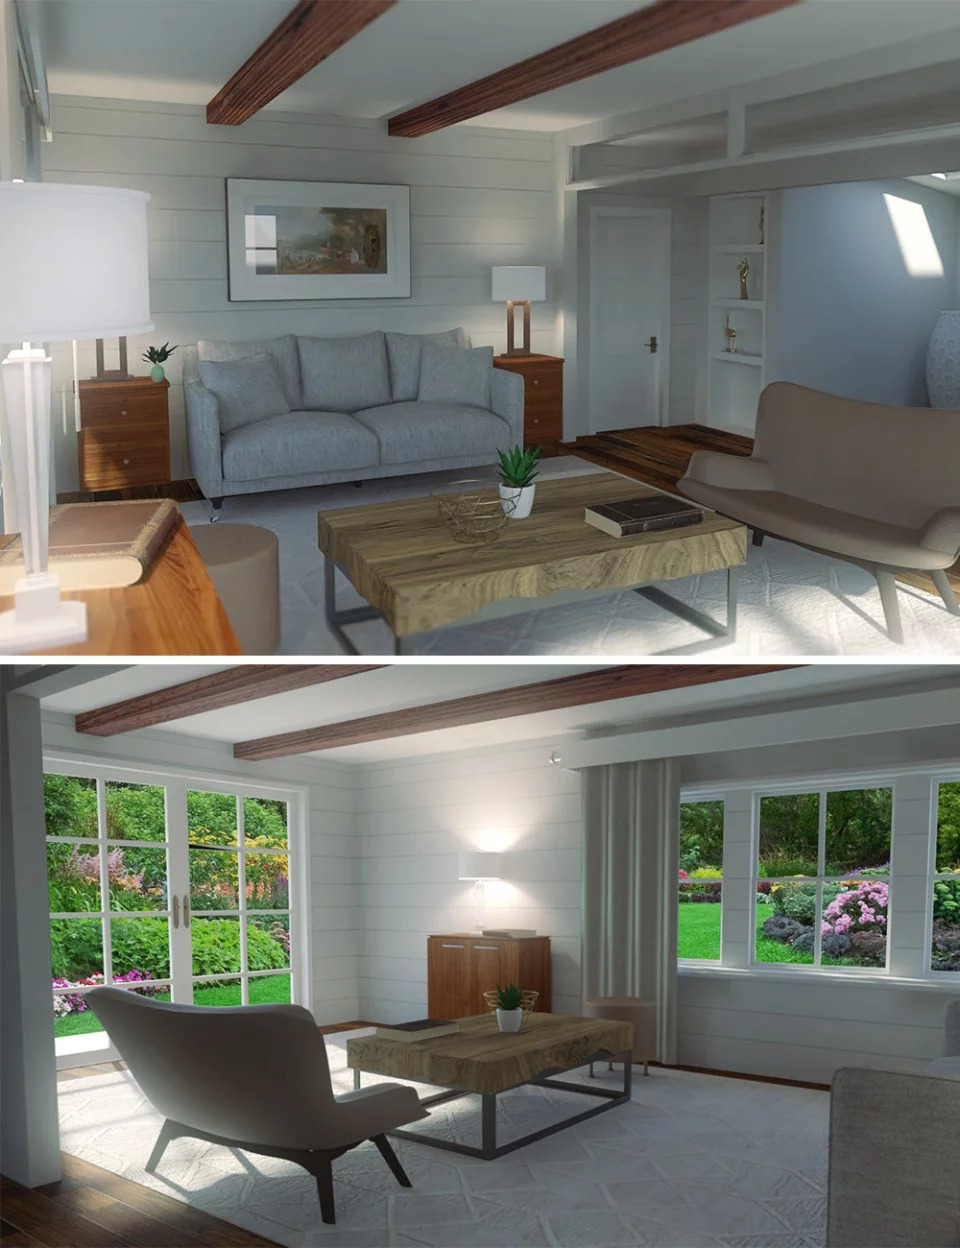 cottage-living-room